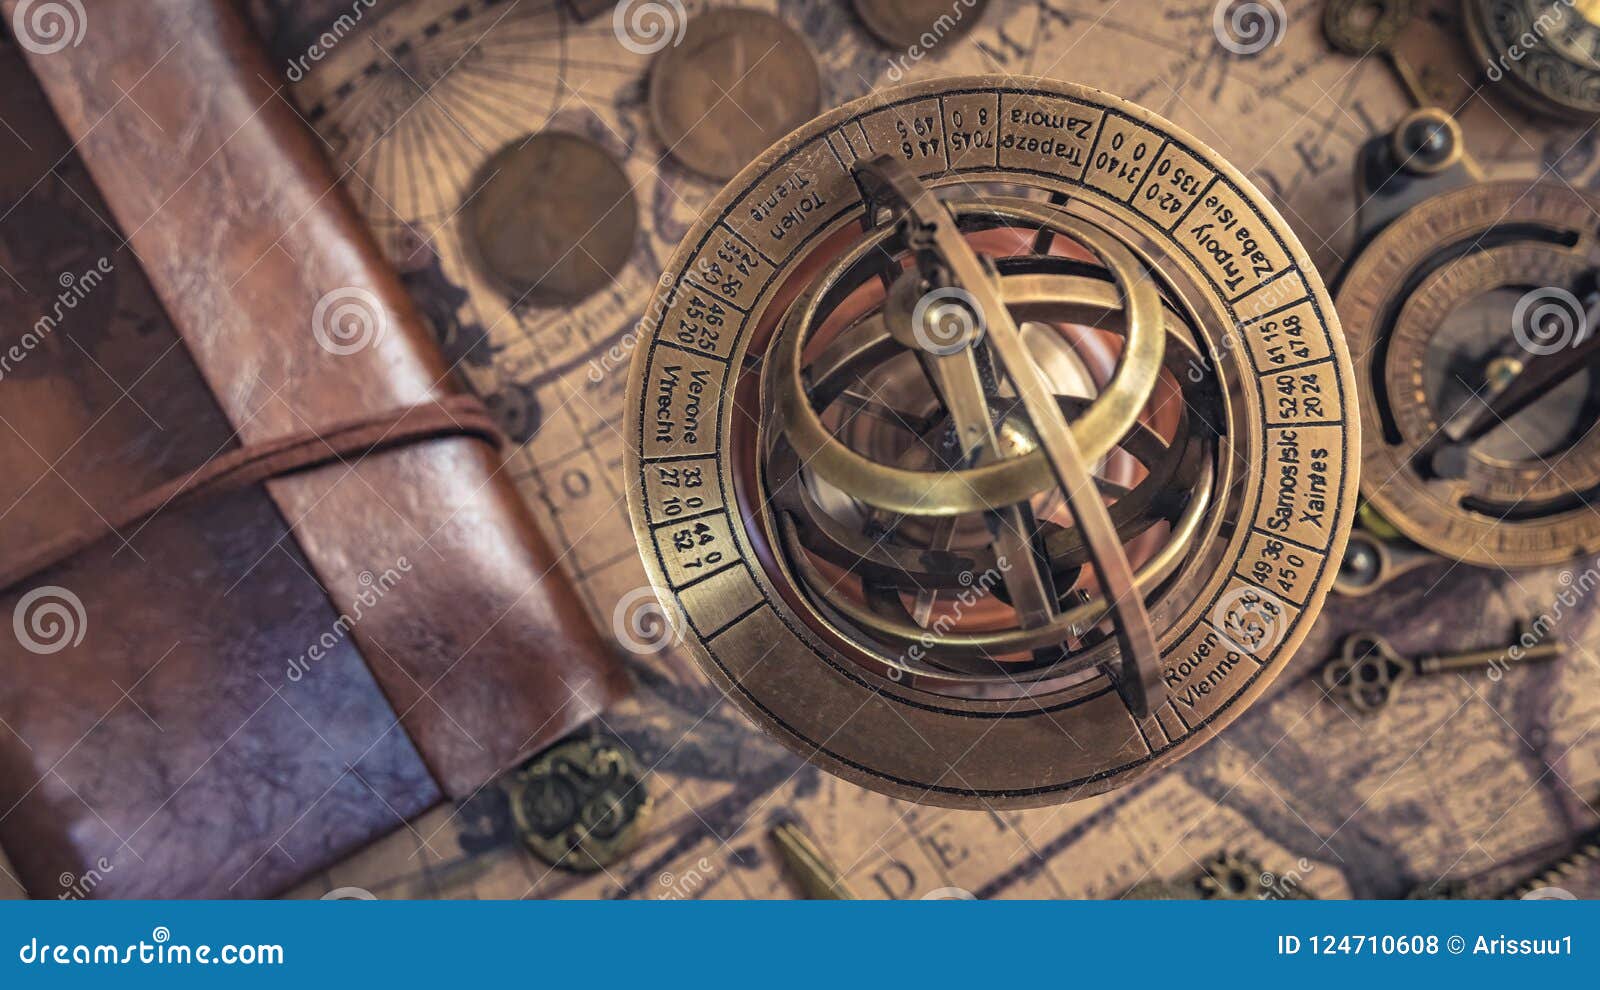 https://thumbs.dreamstime.com/z/antique-brass-nautical-sundial-compass-antique-brass-armillary-nautical-sundial-compass-zodiac-sign-celestial-globe-124710608.jpg